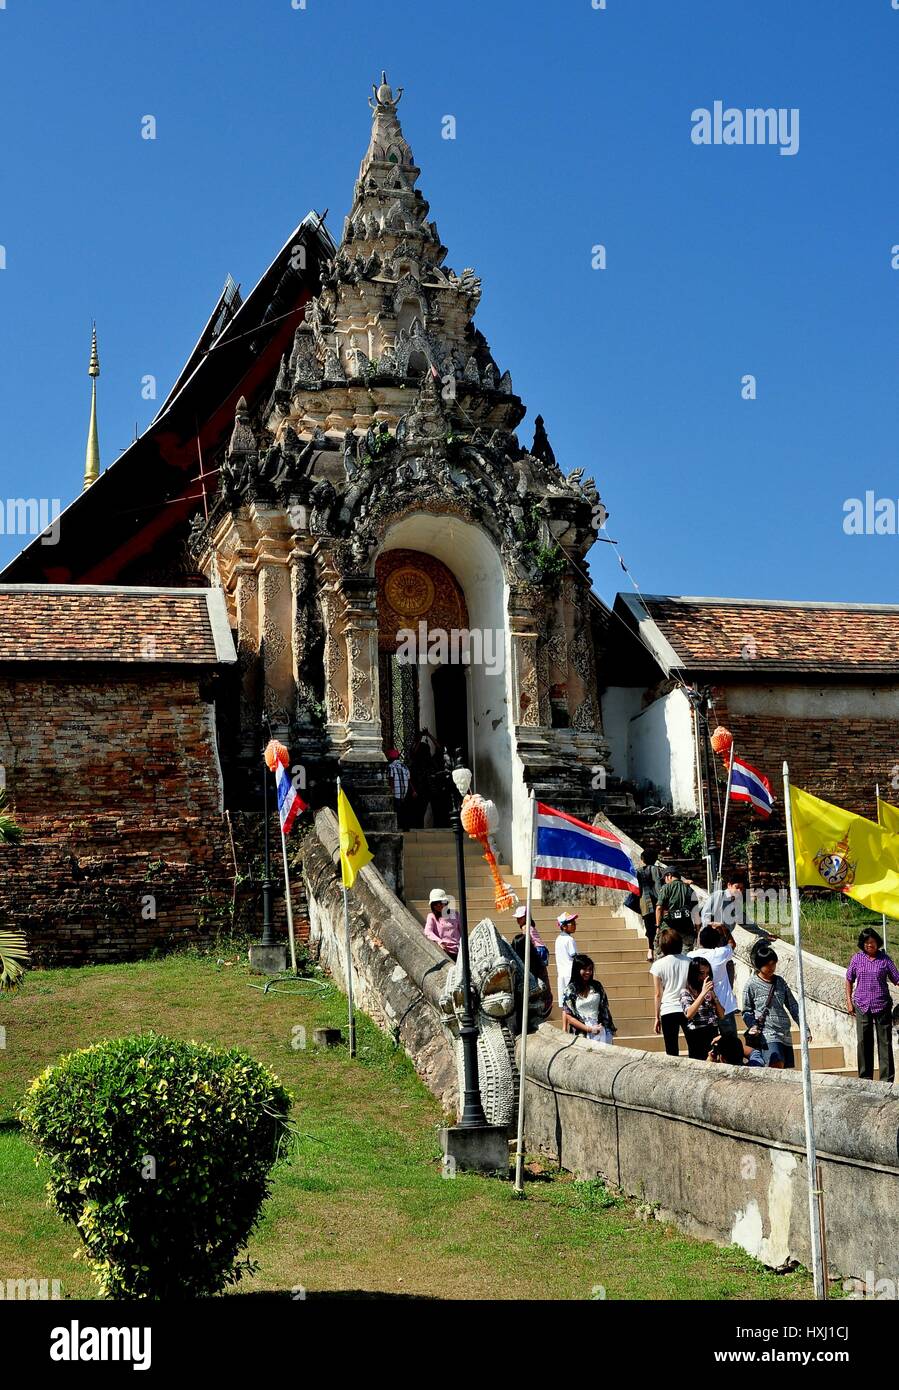 Lampang, Thaïlande - 28 décembre 2012 : porte d'entrée avec des éléments de conception hindoue mène dans la paroi Wat Phra That Lampang Luan Banque D'Images